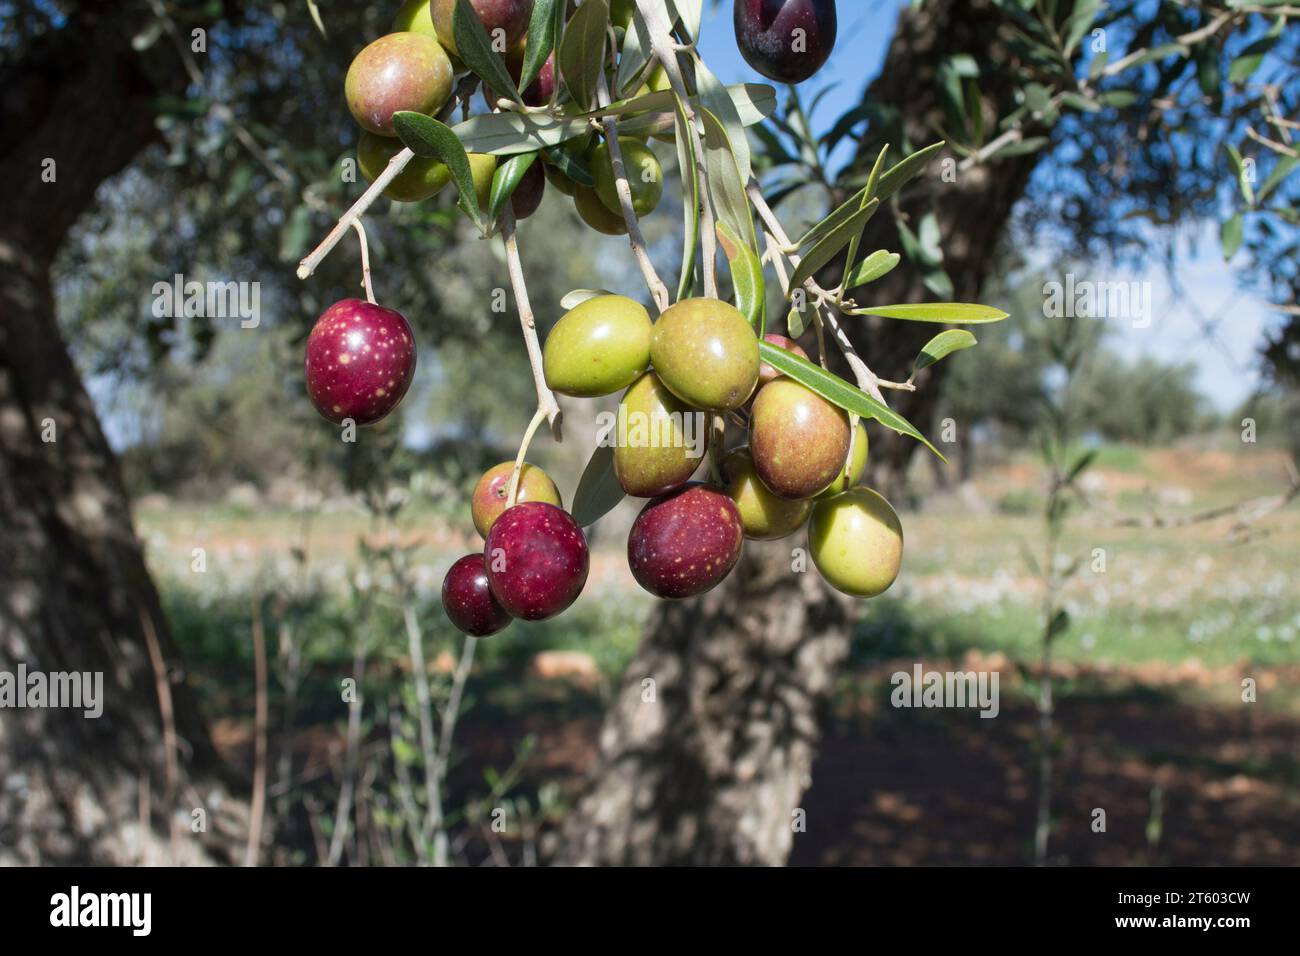 Aceitunas picual fuente de aceite de oliva virgen extra Stock Photo